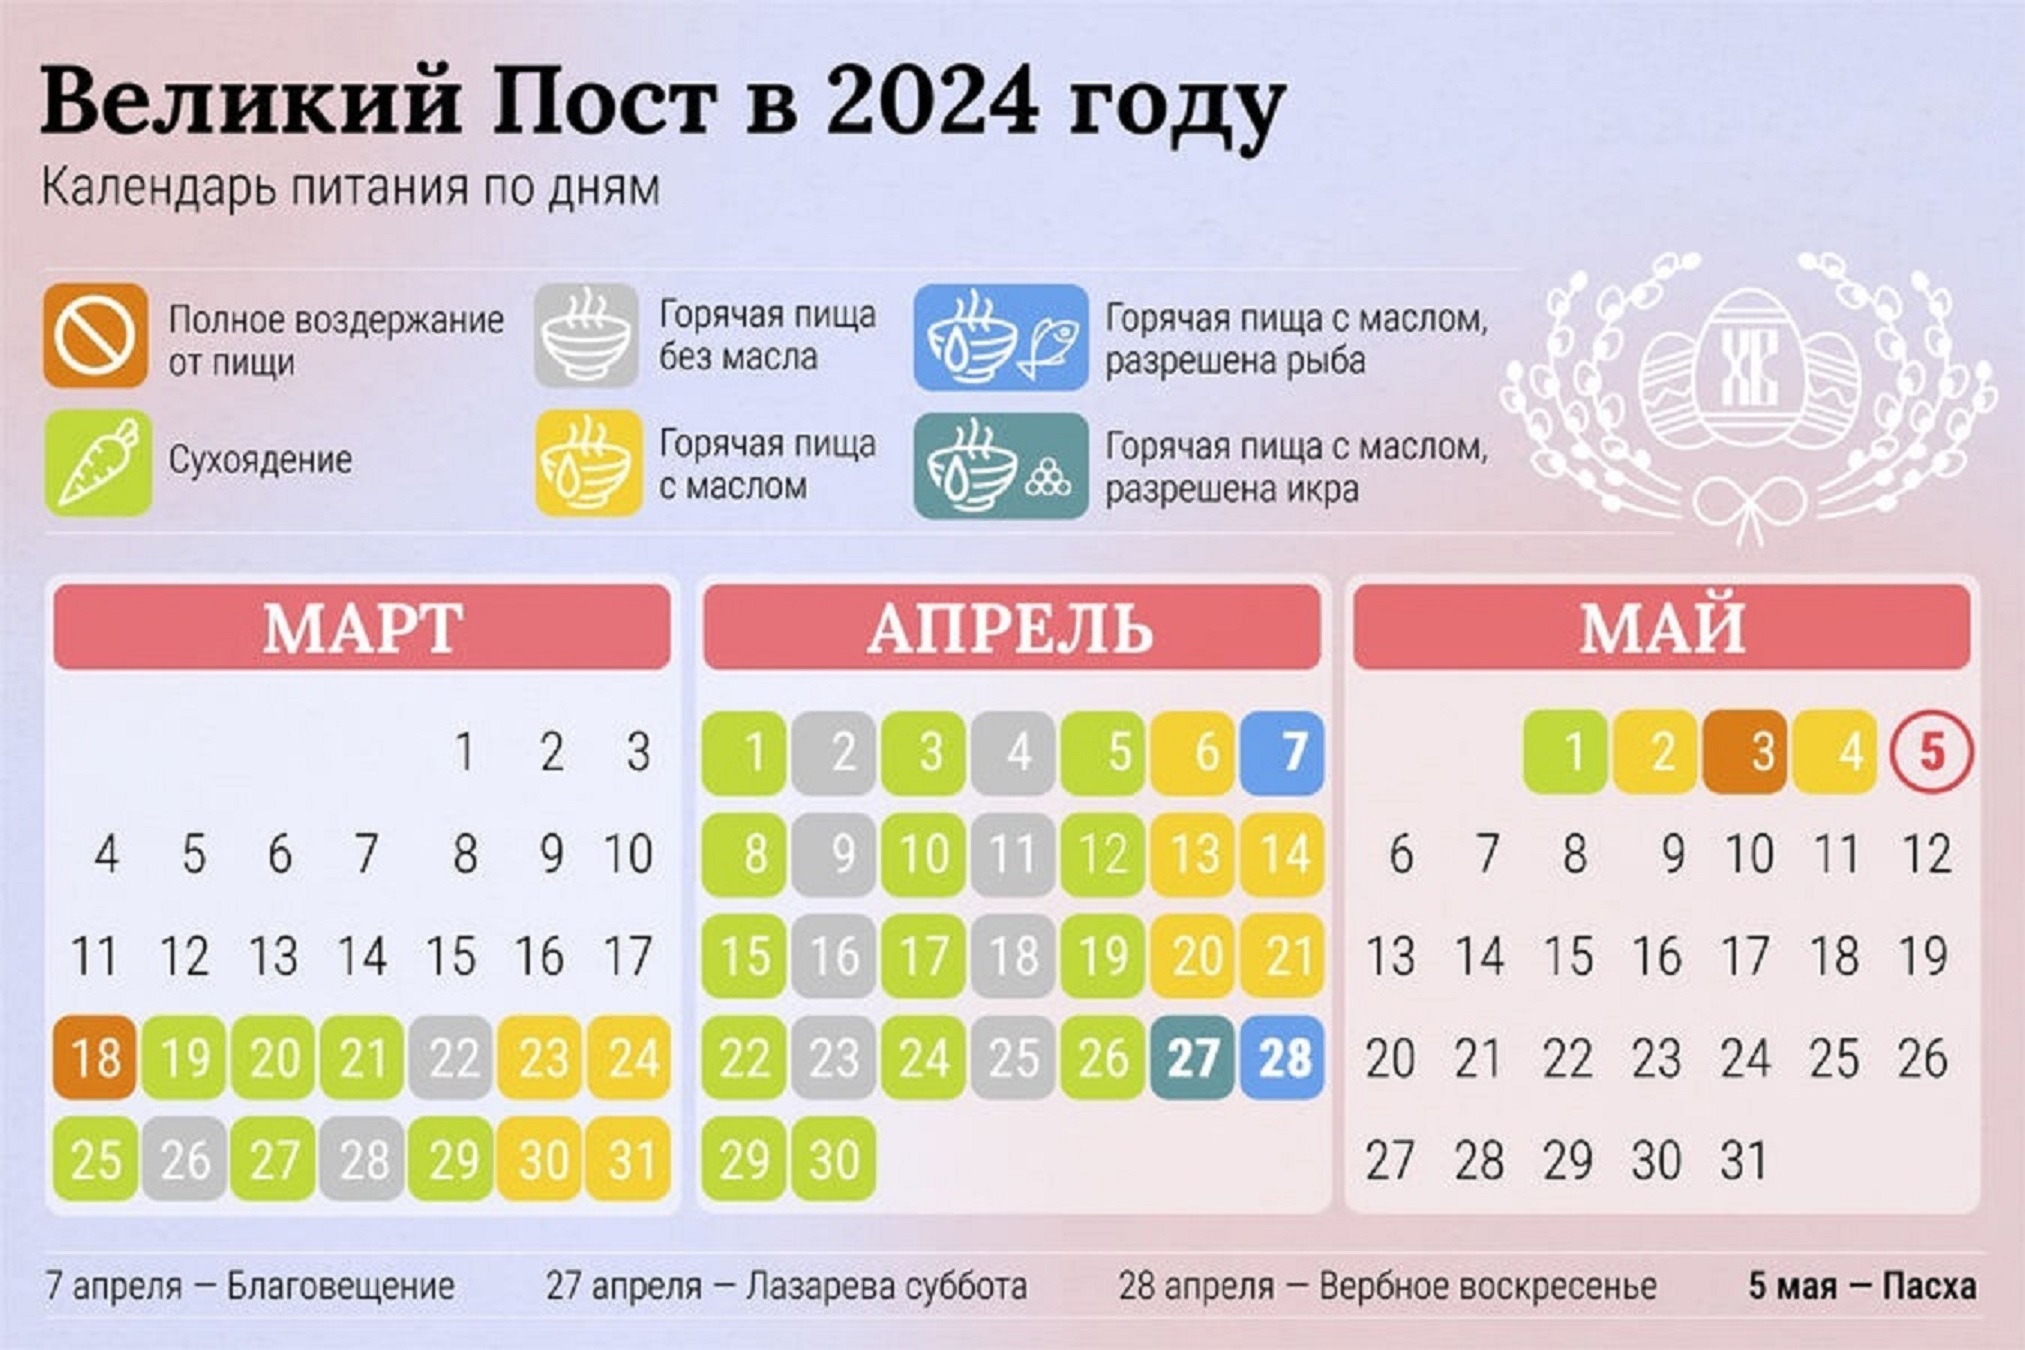 Когда заканчивается великий православный пост. Великий пост 2023. Великий пост в 2023 году. Даты Великого поста в 2023 году. Пасхальный пост в 2023 году.